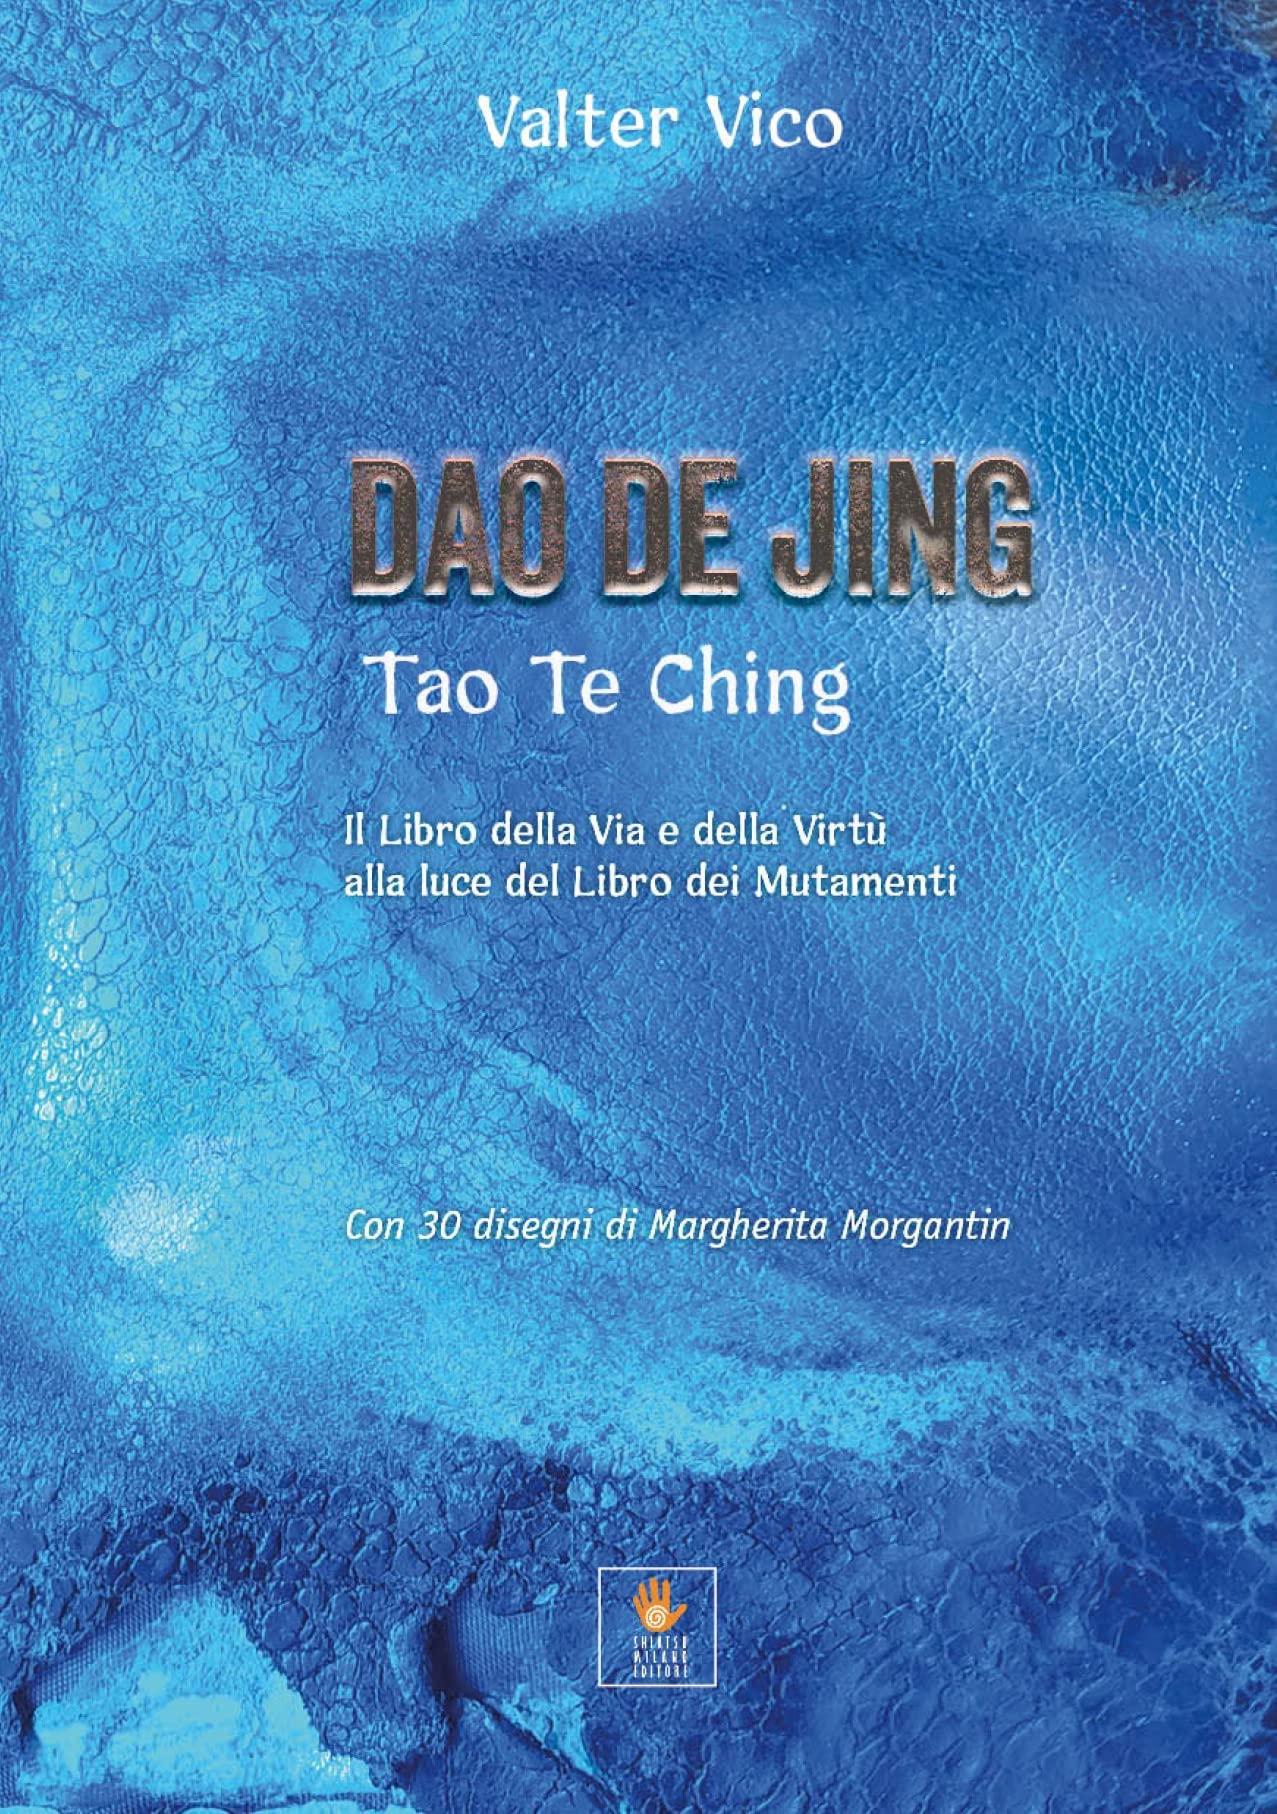 Libri Vico Valter - Dao De Jing (Tao Te Ching). Il Libro Della Via E Della Virtu Alla Luce Del Libro Dei Mutamenti NUOVO SIGILLATO SUBITO DISPONIBILE